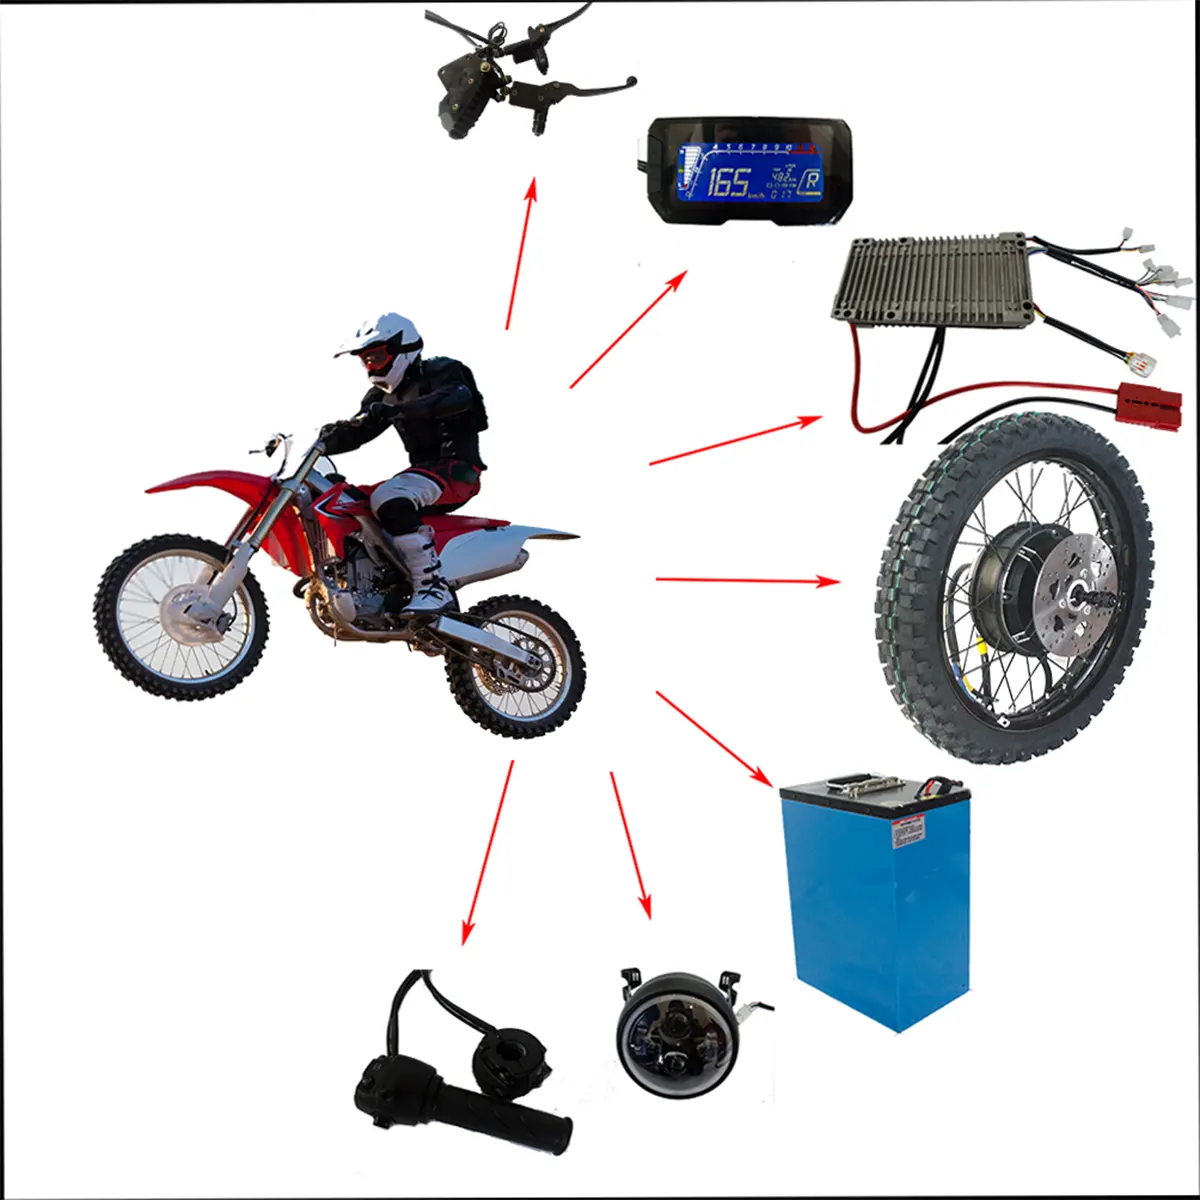 Kit de motocicleta elétrica para motocross, com alto desempenho